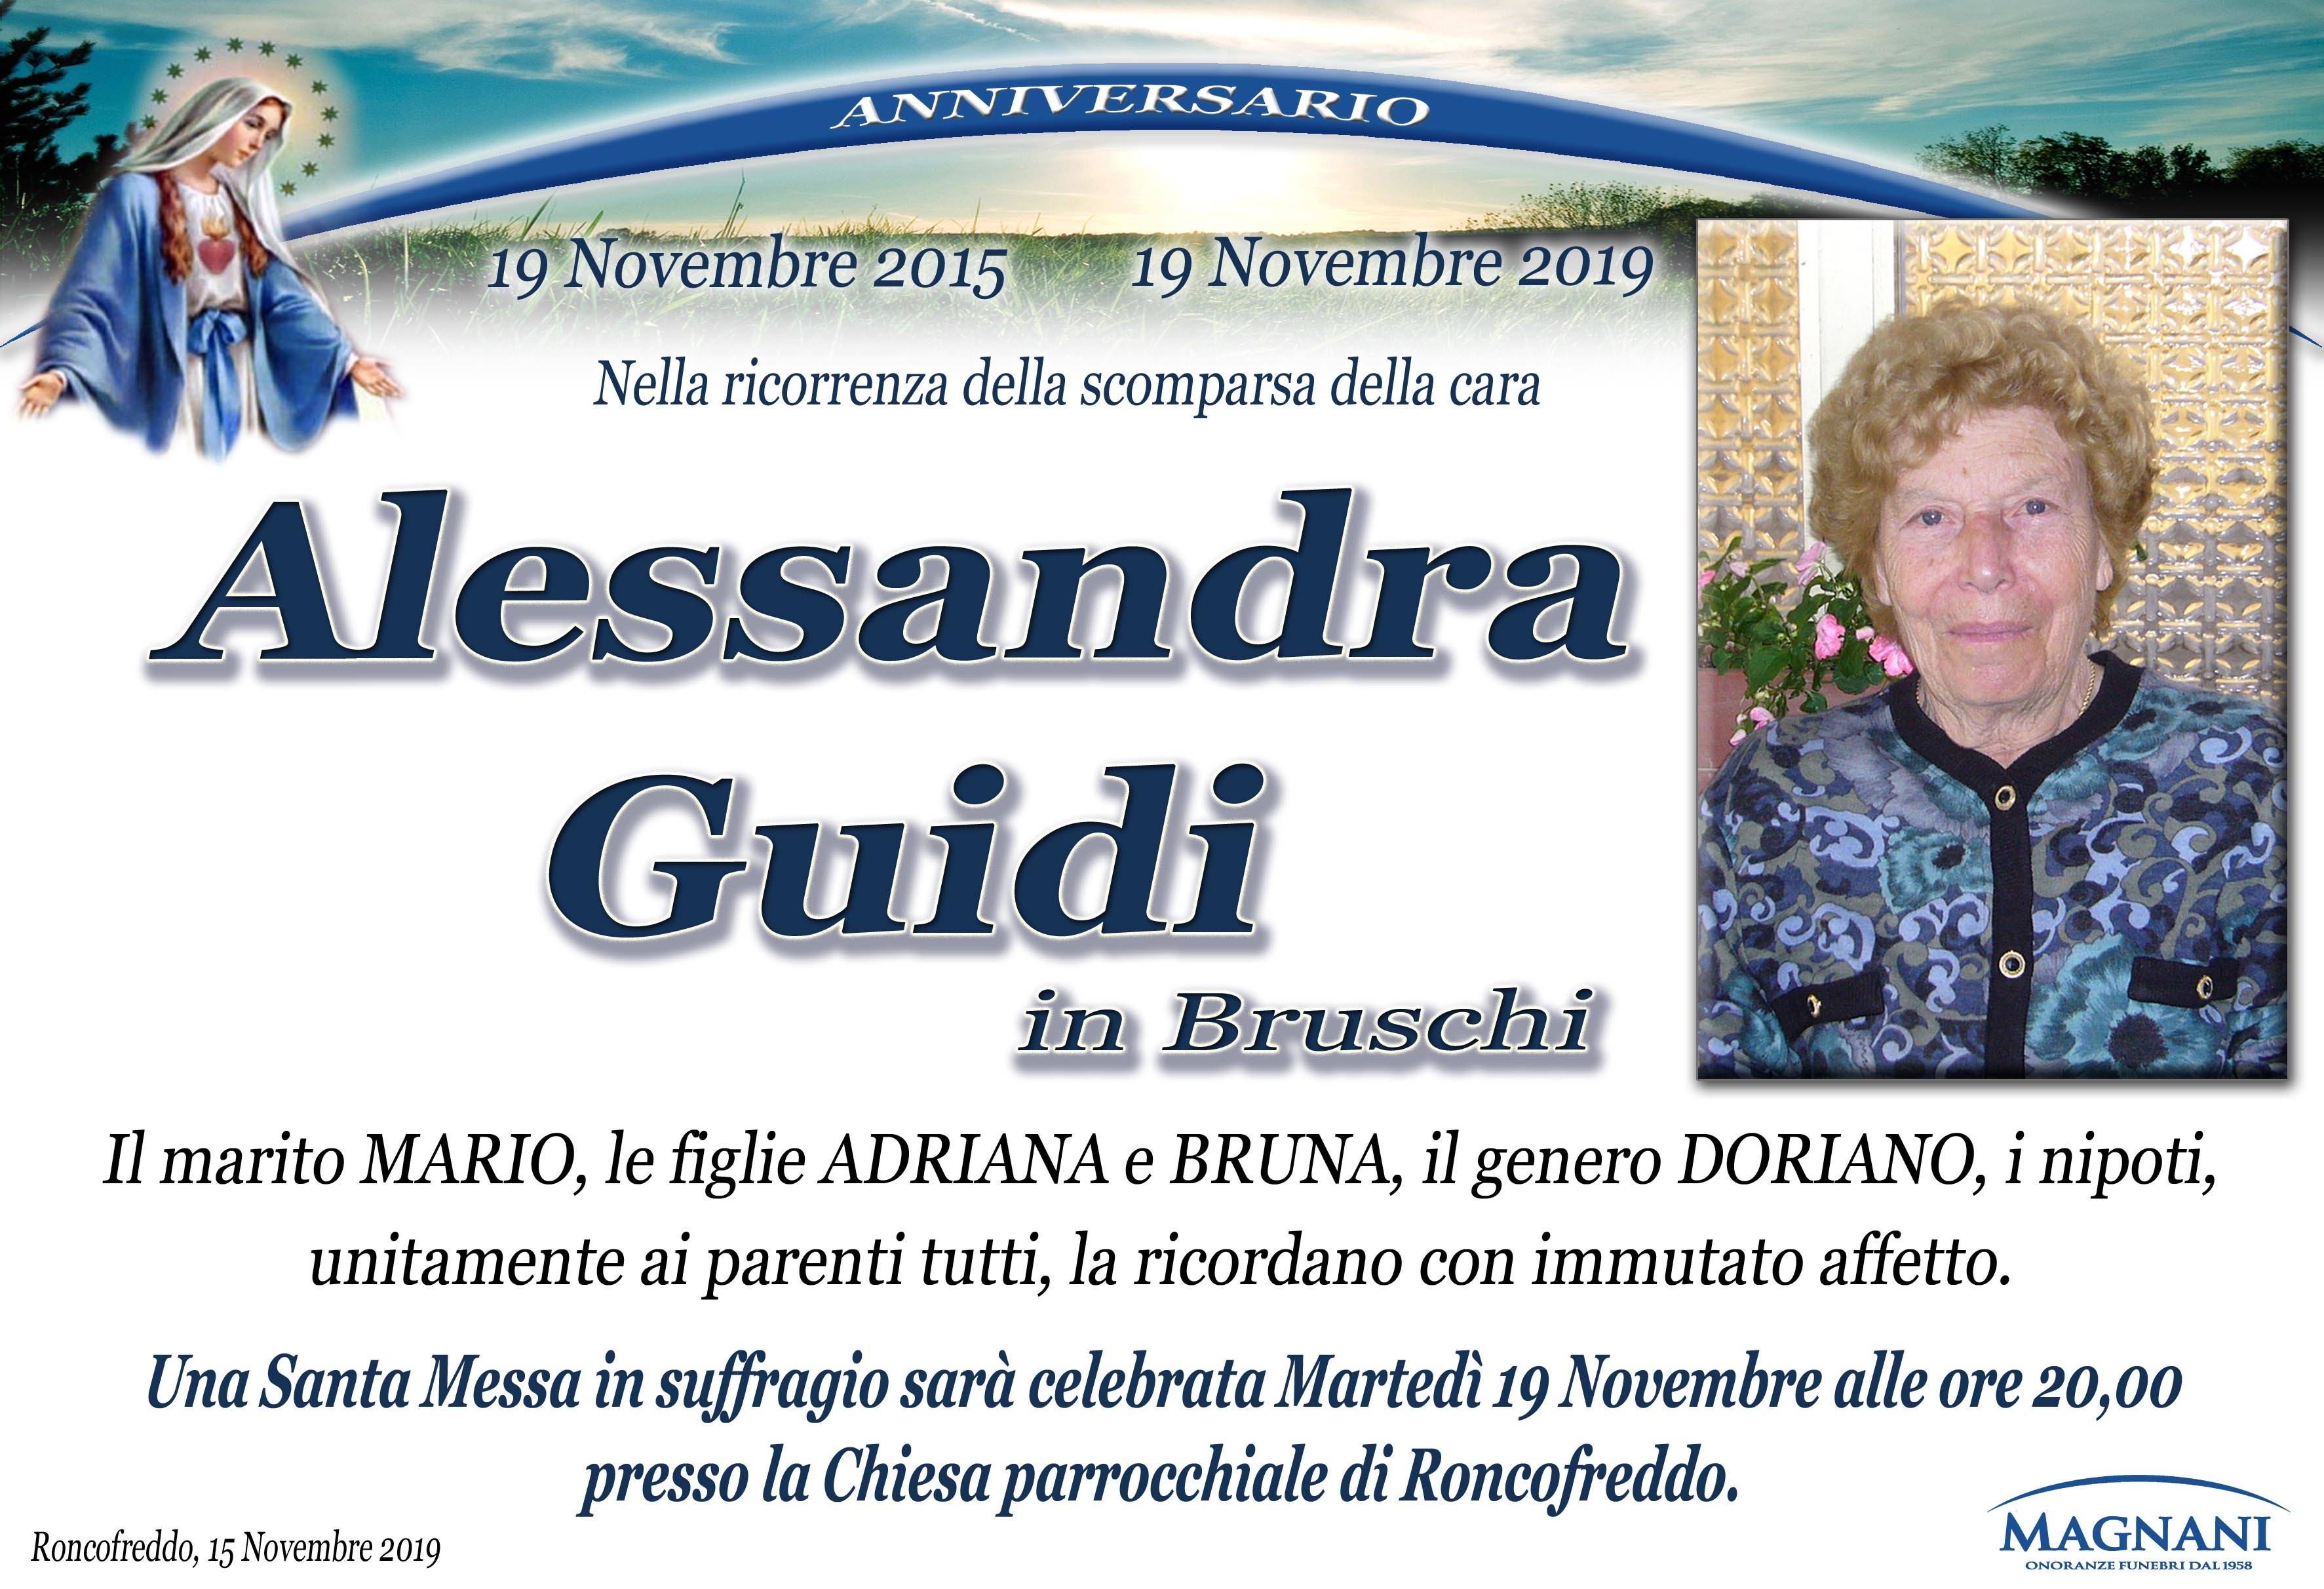 Alessandra Guidi